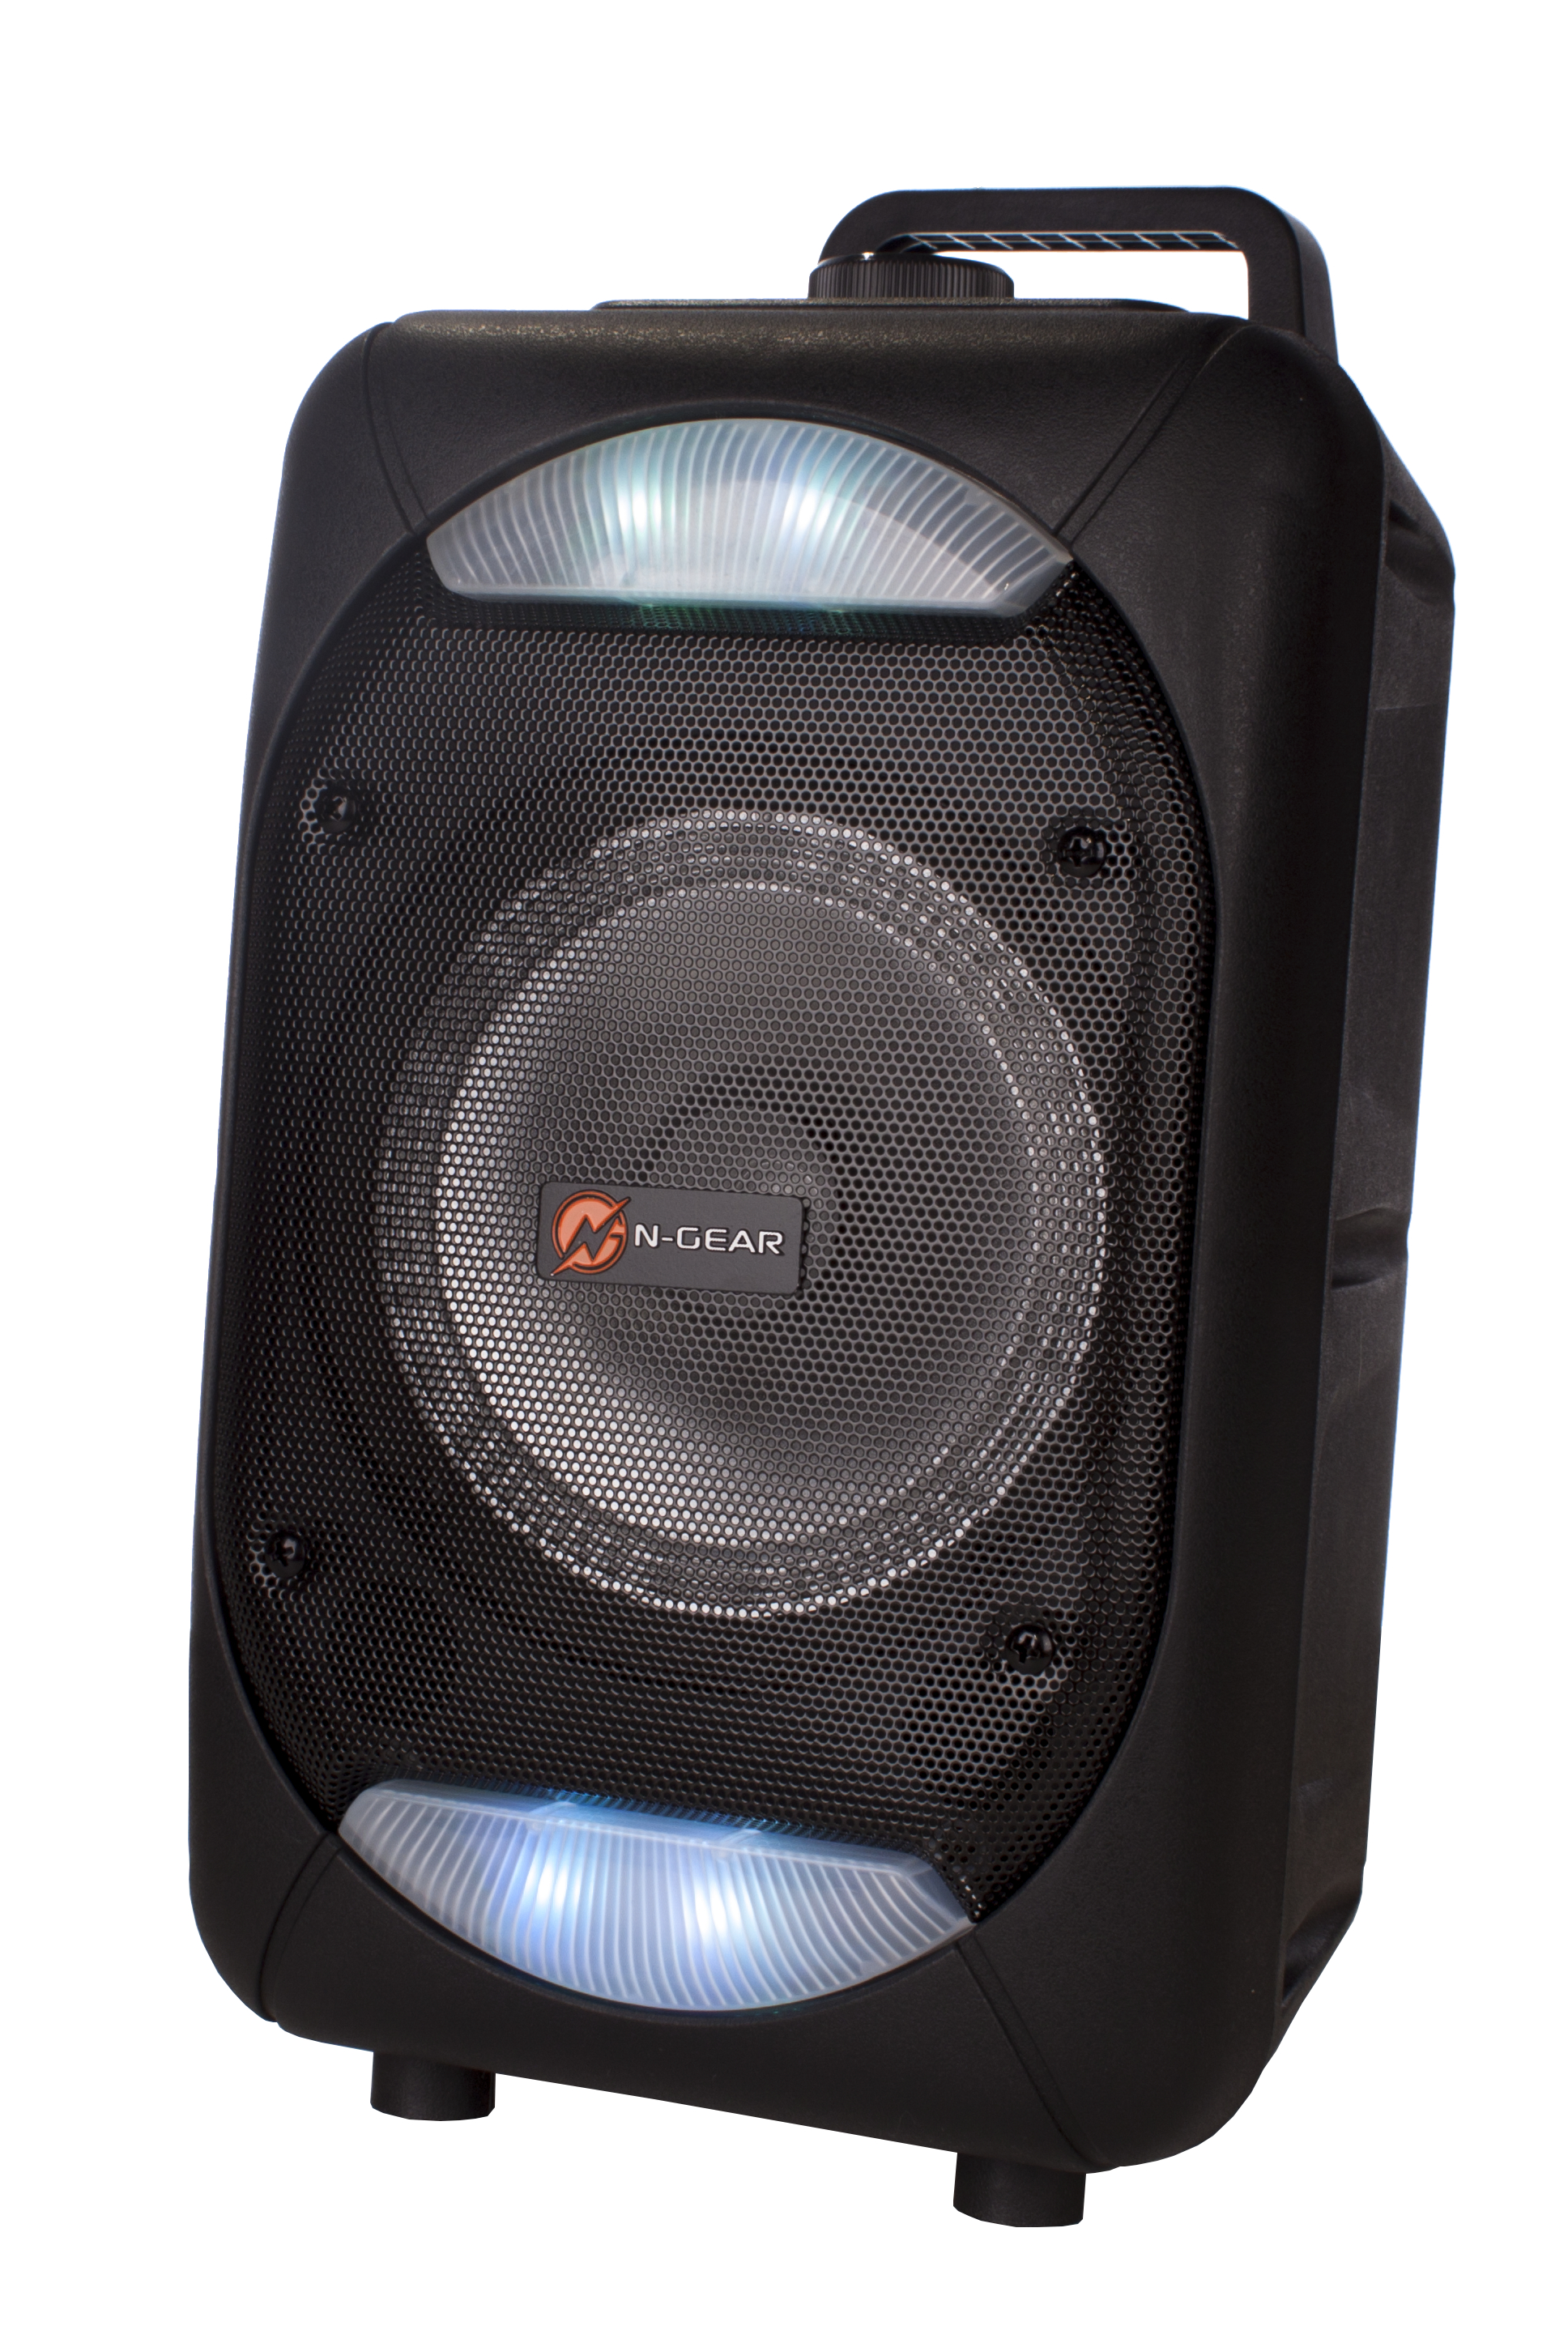 N-GEAR The Lautsprecher, Schwarz 610 Flash Bluetooth